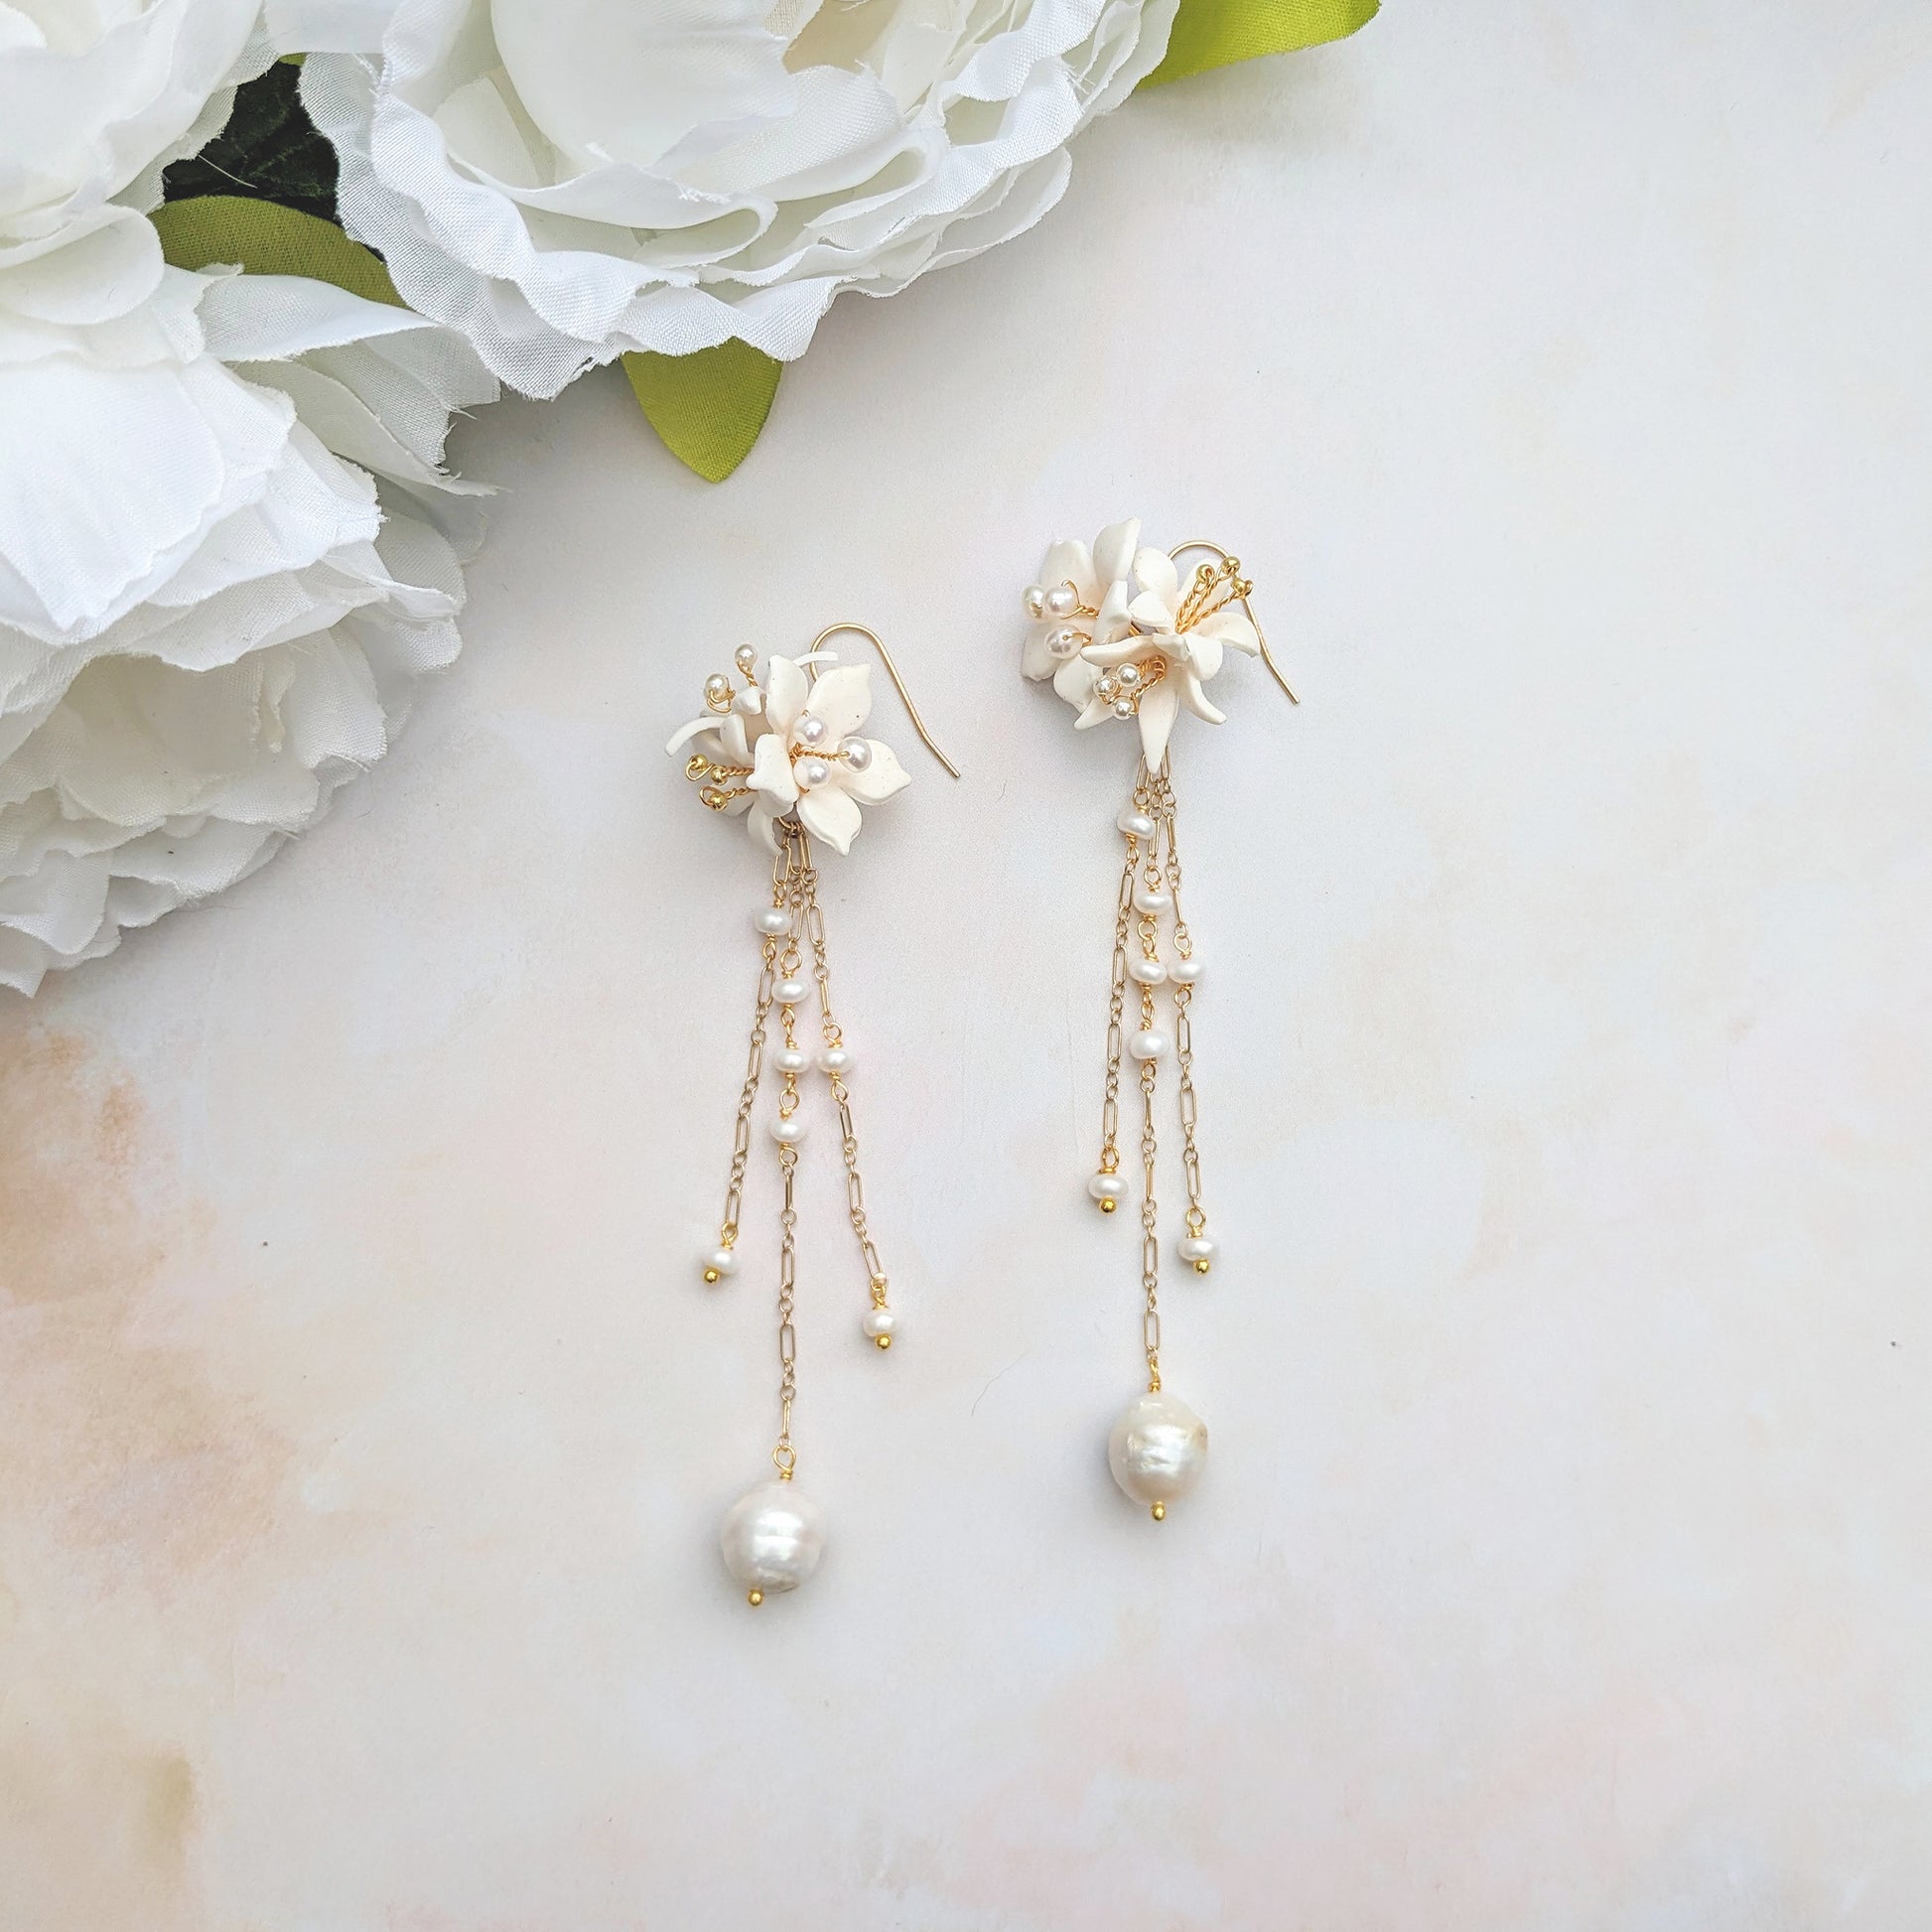 Floral wedding earrings with baroque pearls - Susie Warner